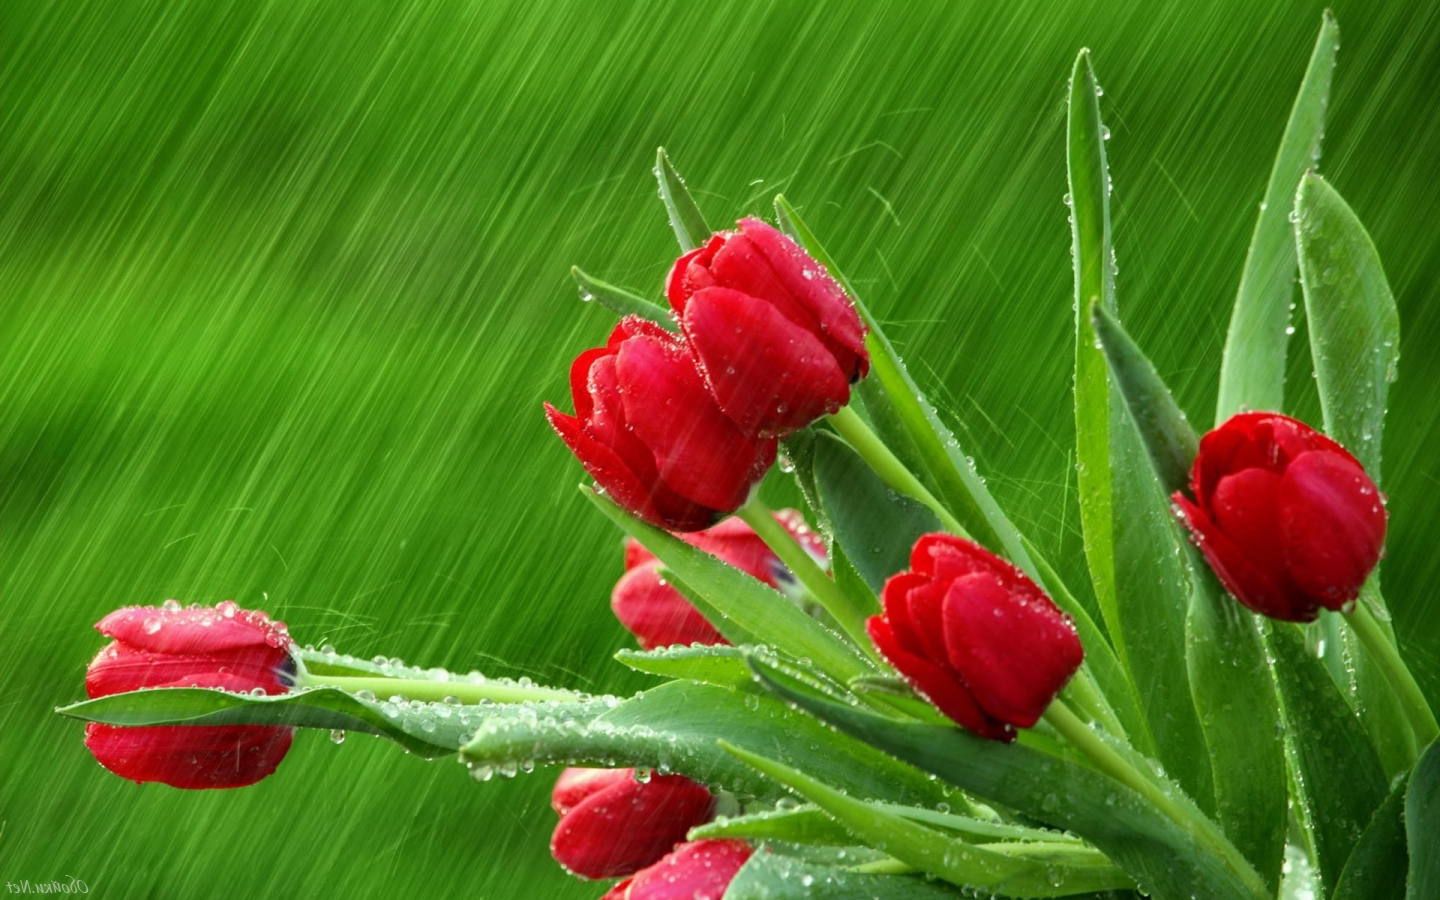 Дождь, цветы, тюльпаны картинки Природа картинки, обои рабочий стол